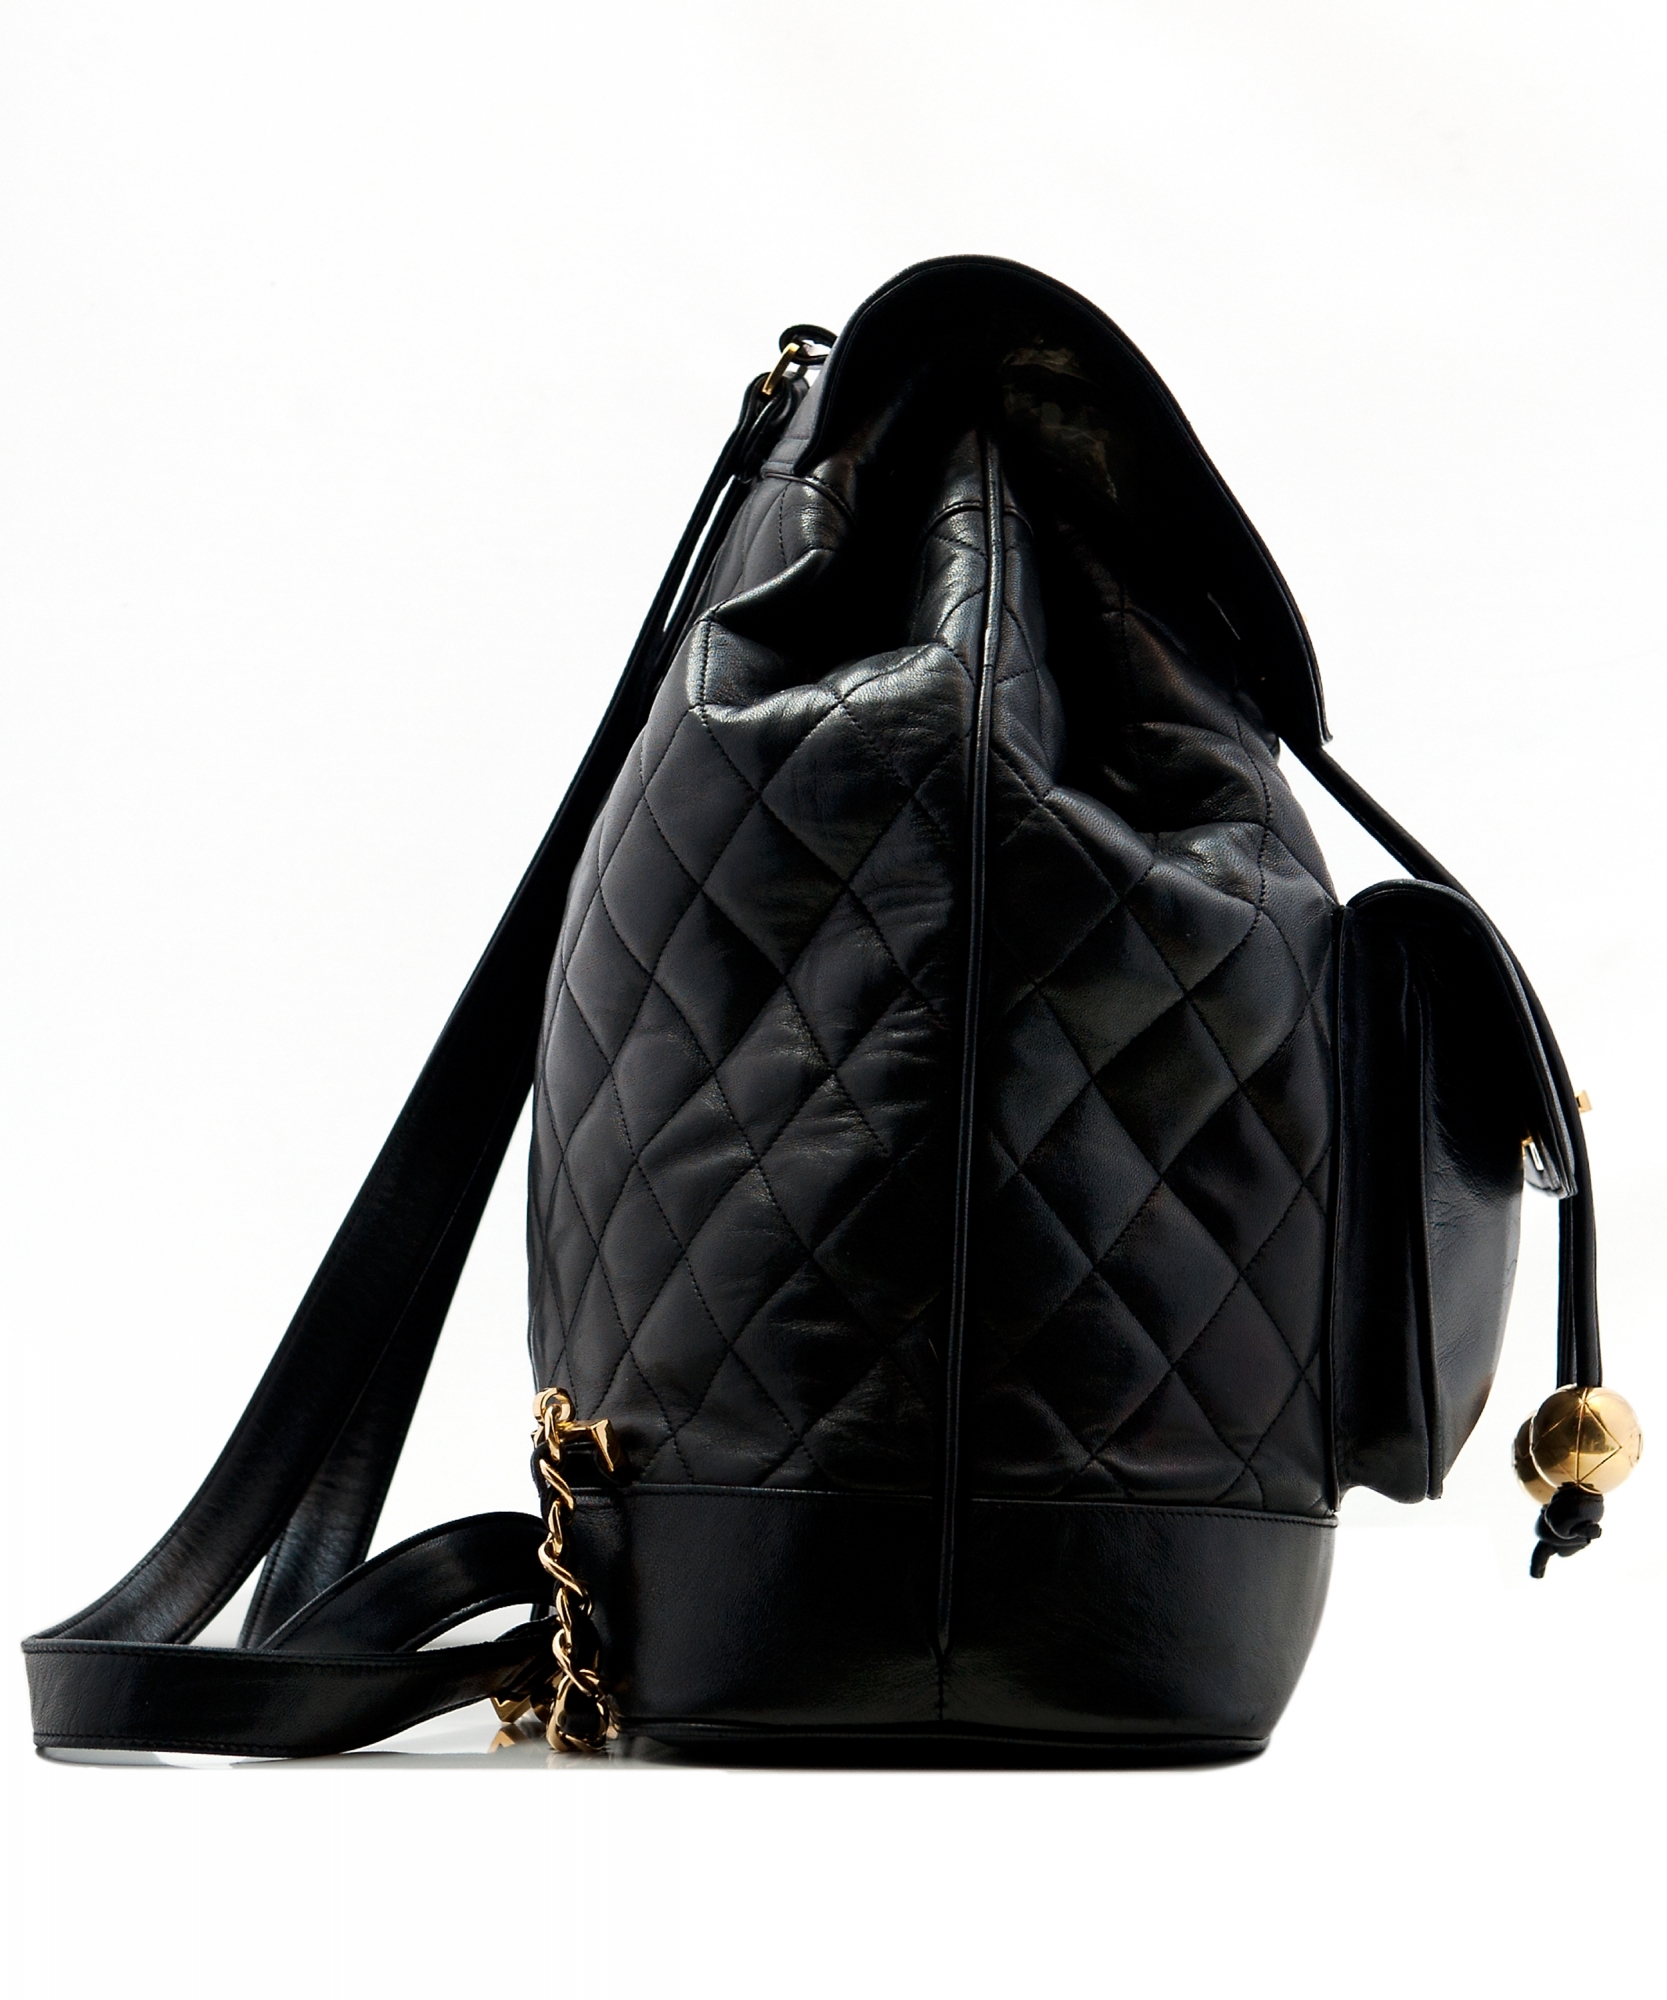 Chanel Black Lambskin Leather Jumbo Backpack - Chanel